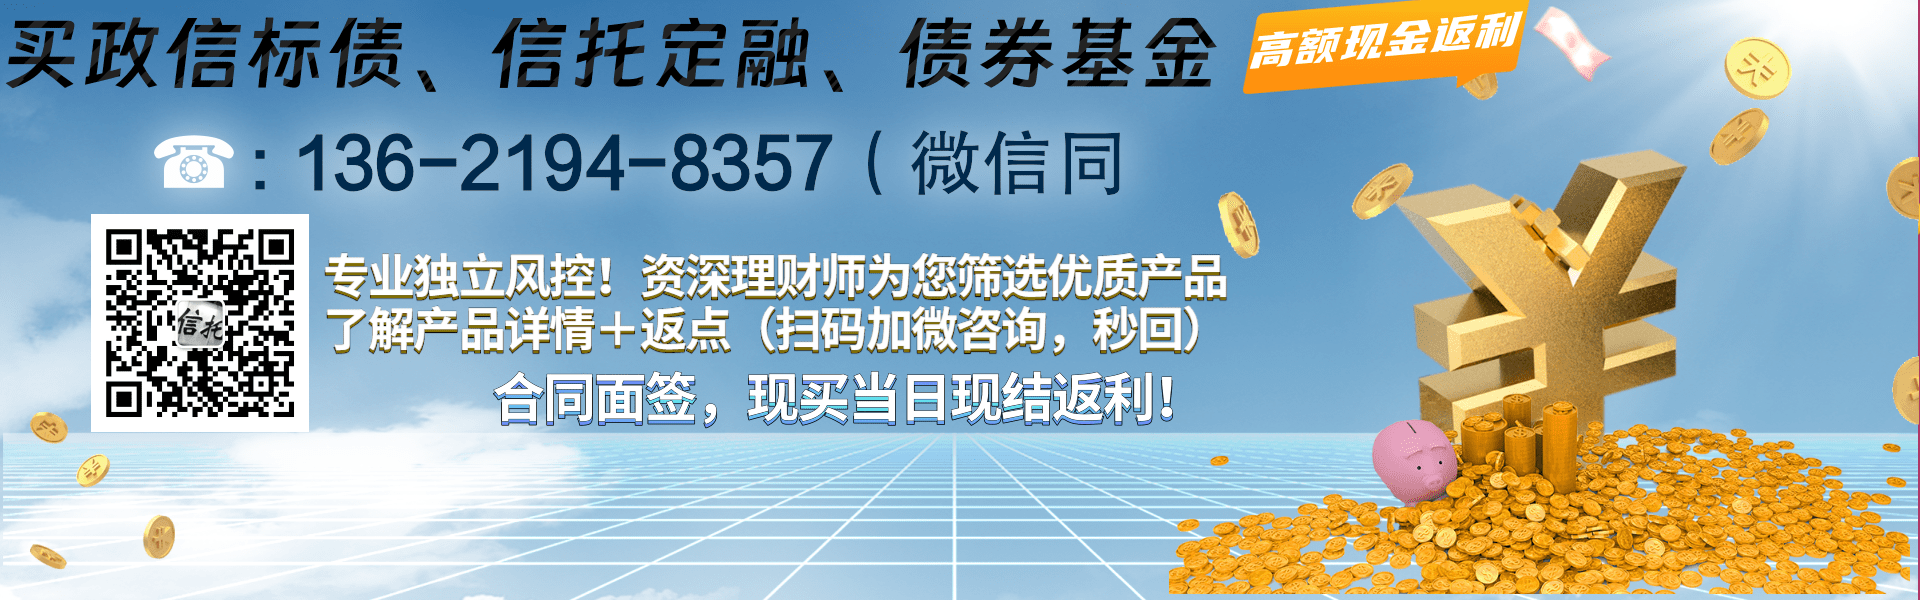 山东青州宏源债权资产融资计划12个月